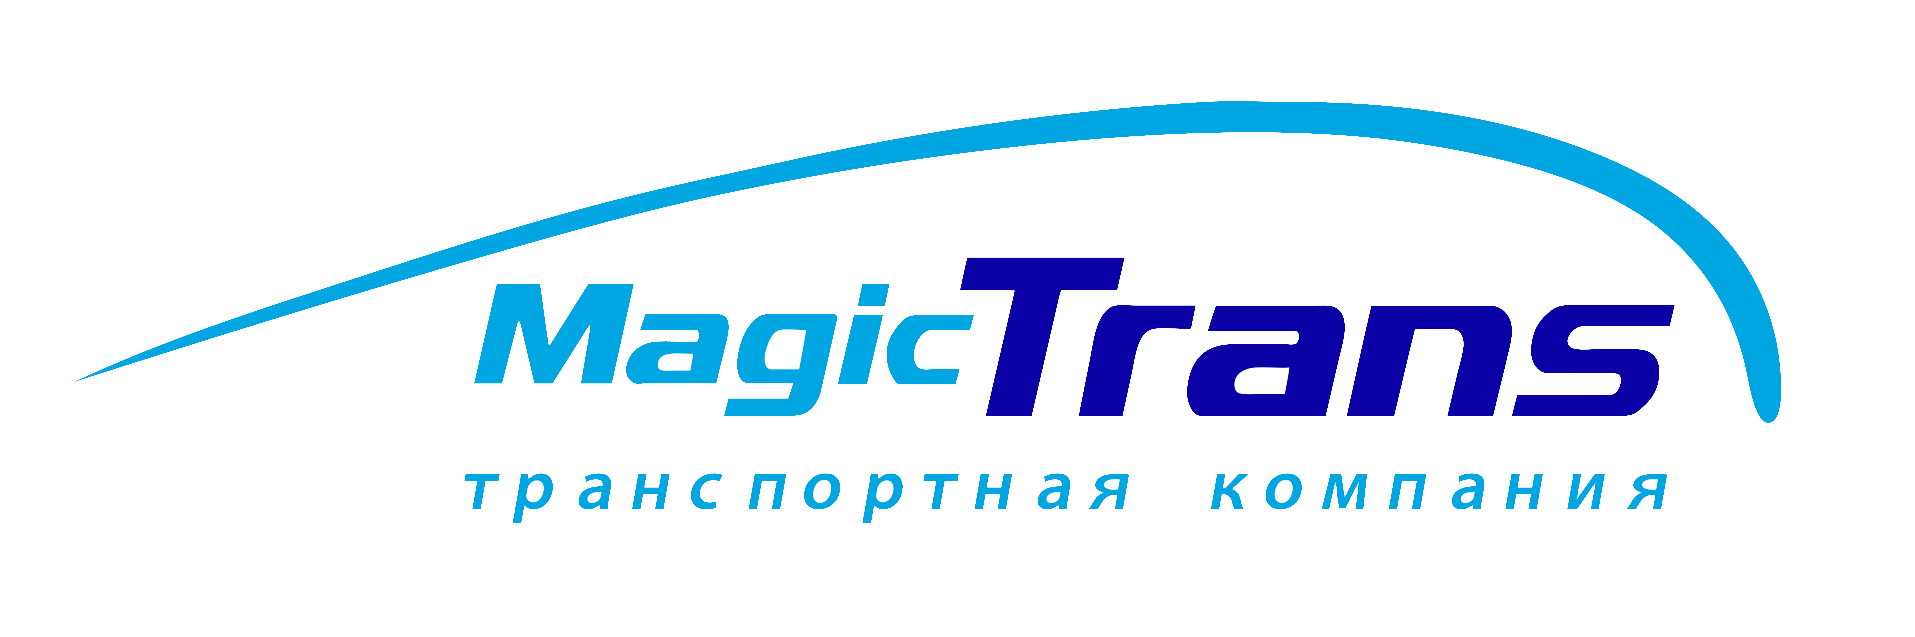 Компания Мейджик транс. Magic Trans логотип. Эмблема транспортной компании. ТК «Мейджик транс» лого. Компания magic trans